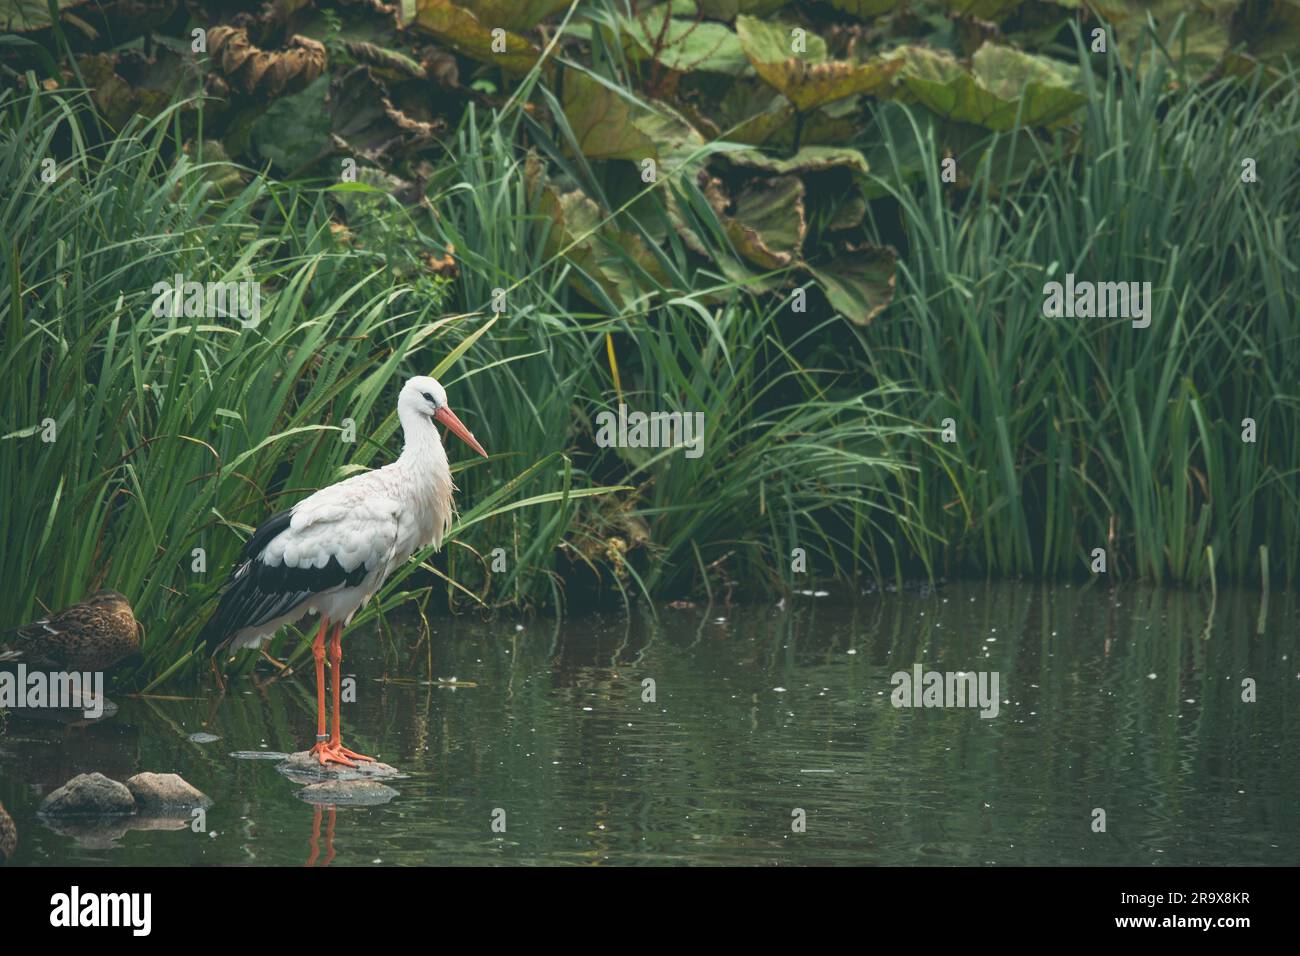 Cigogne blanche dans une rivière avec des roseaux vert Banque D'Images